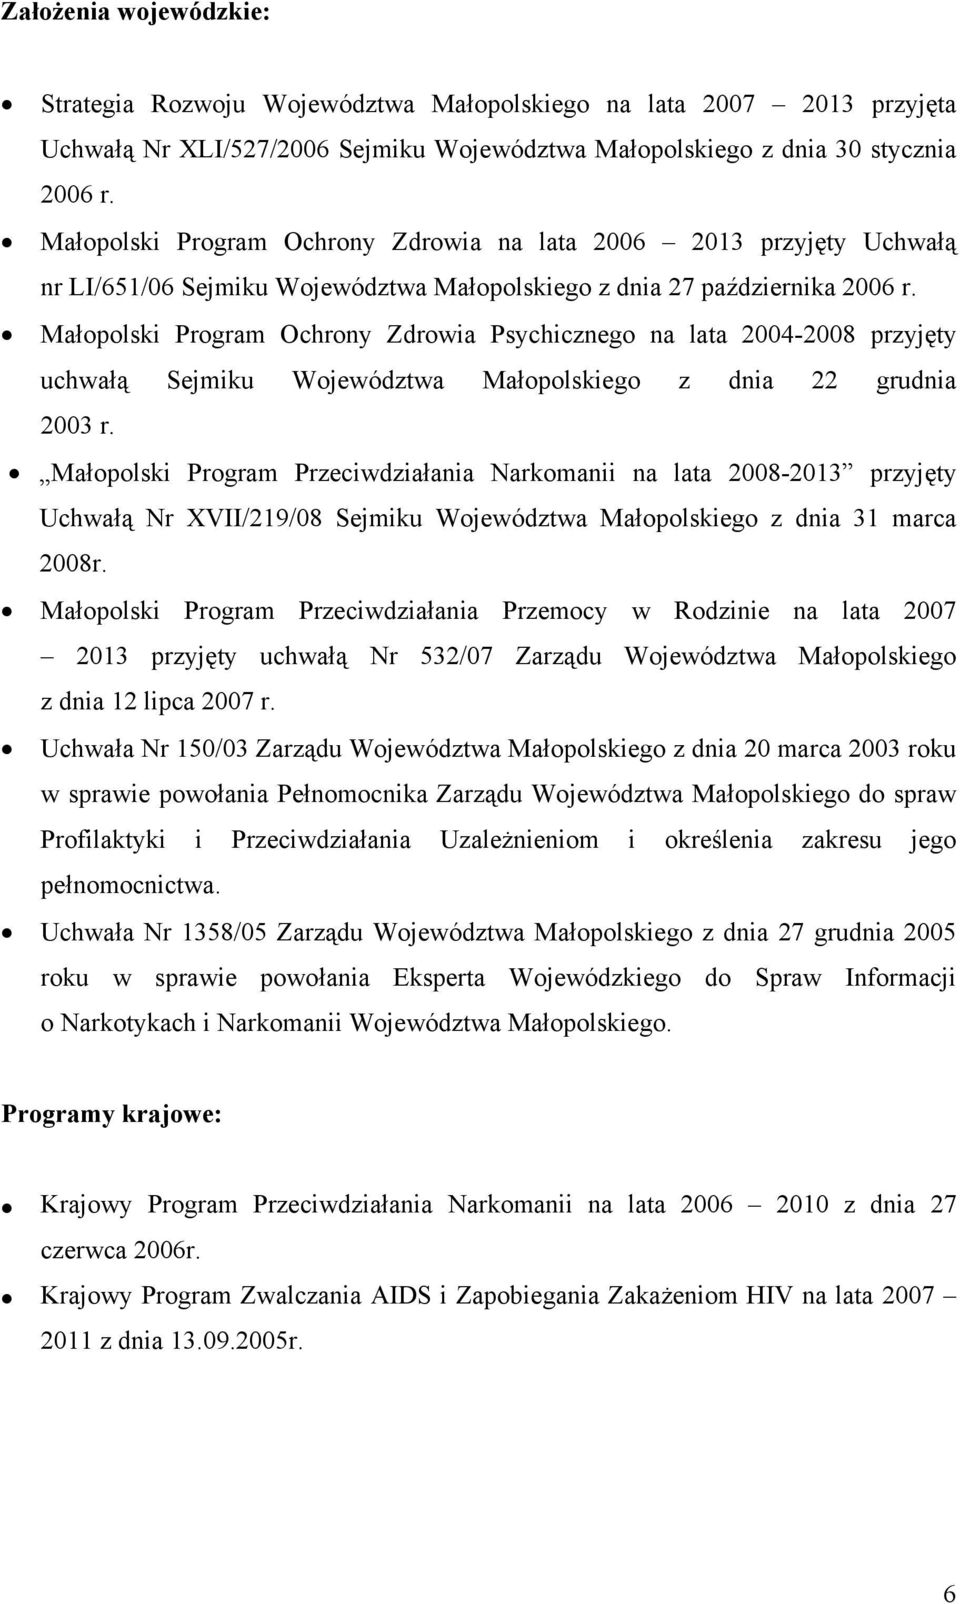 Małopolski Program Ochrony Zdrowia Psychicznego na lata 2004-2008 przyjęty uchwałą Sejmiku Województwa Małopolskiego z dnia 22 grudnia 2003 r.